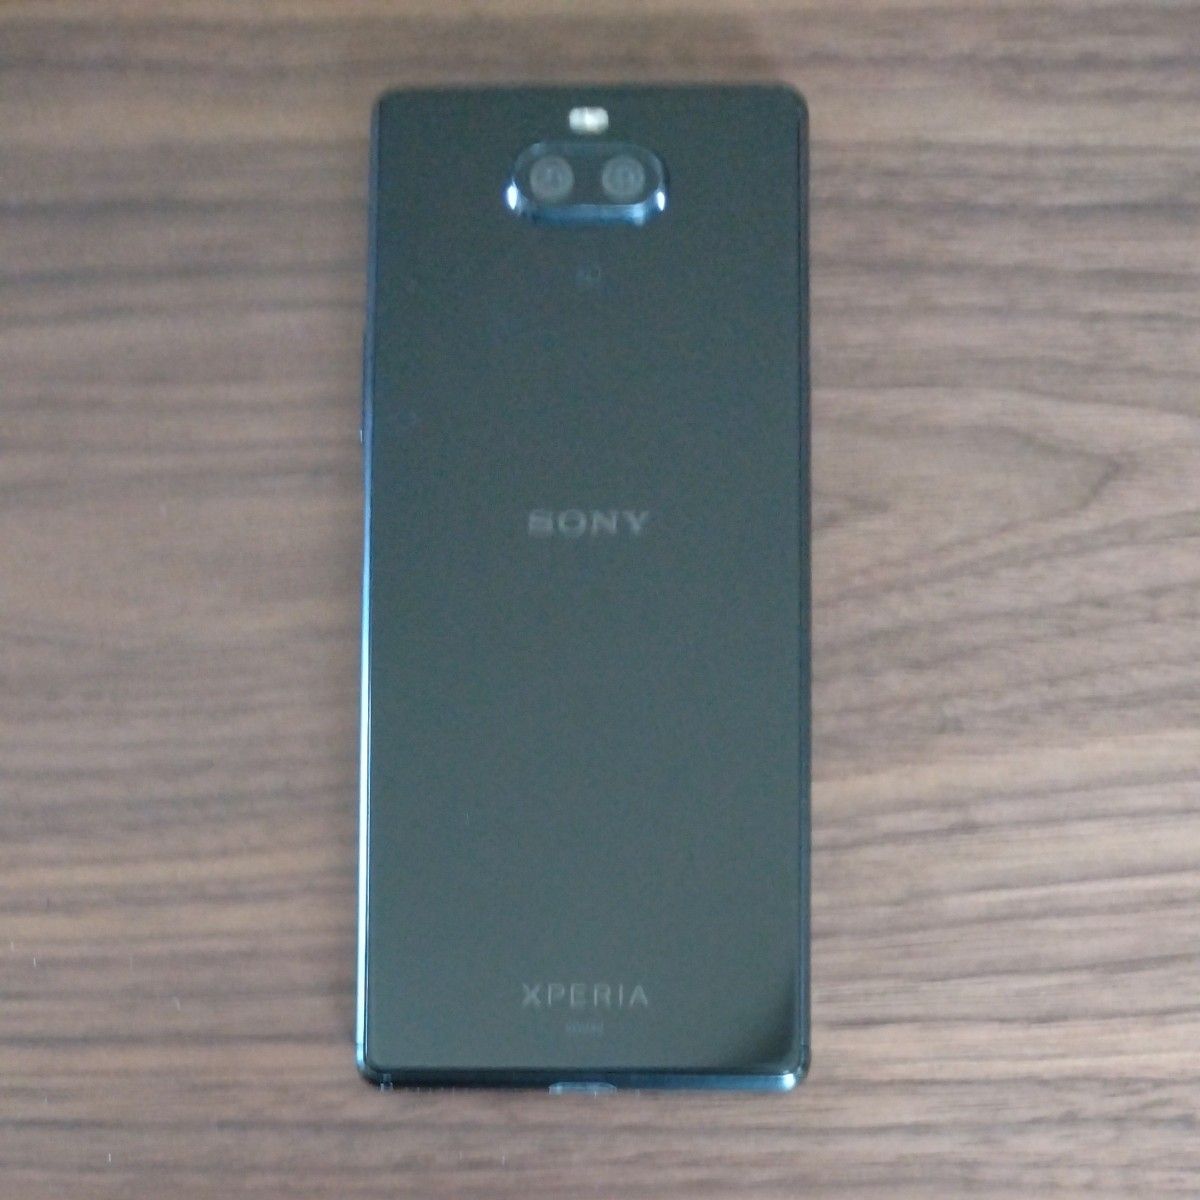 【おまけ付】Xperia 8 SOV42 Android スマートフォン ブラック おまけ32GBmicroSDカード